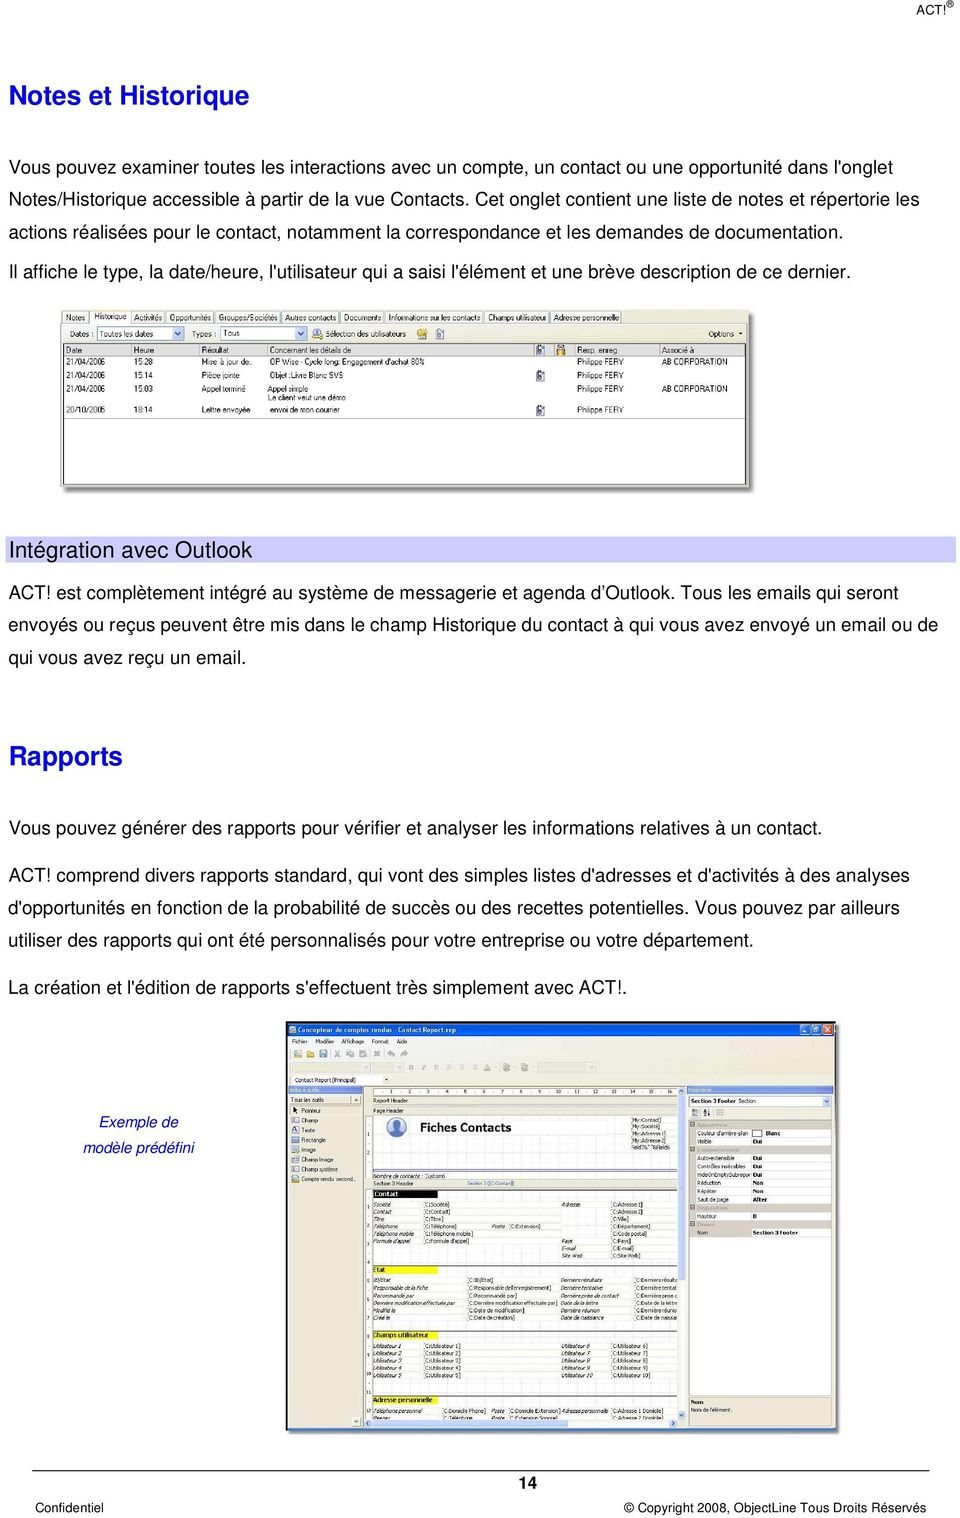 Il affiche le type, la date/heure, l'utilisateur qui a saisi l'élément et une brève description de ce dernier. Intégration avec Outlook ACT!